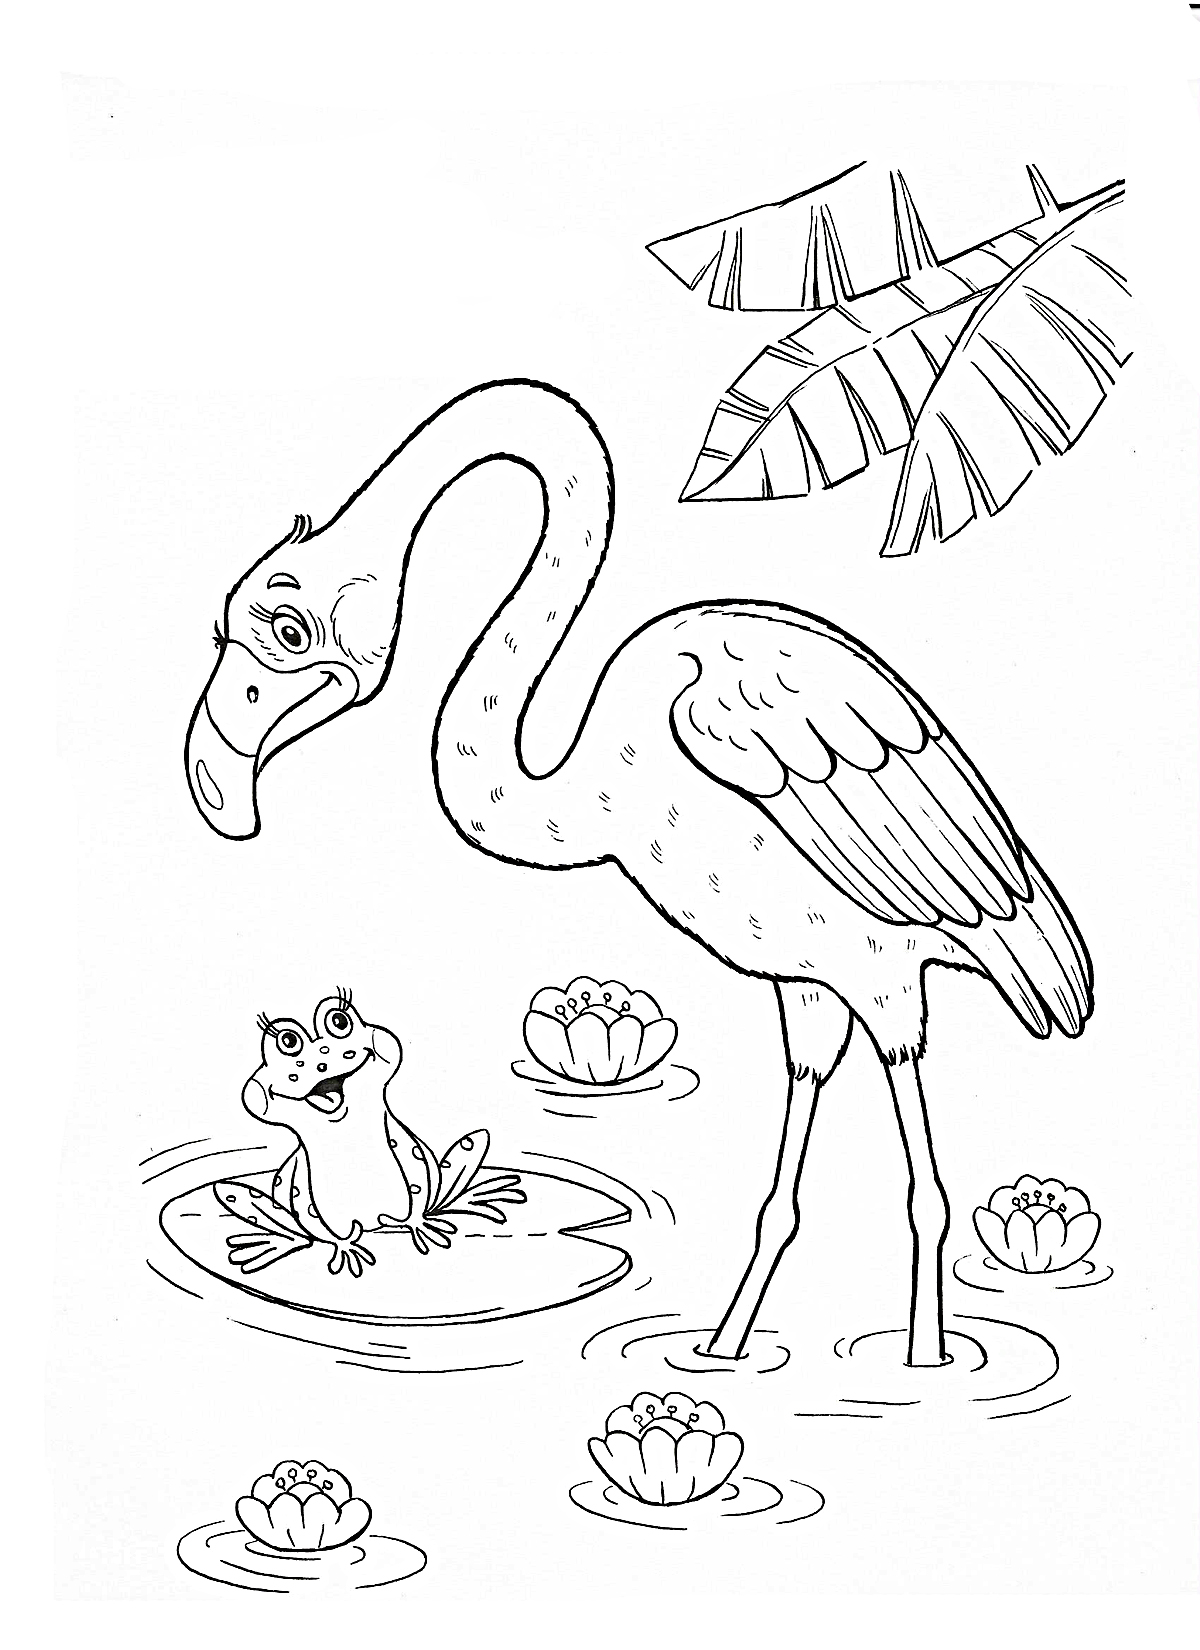 Flamingo and frog